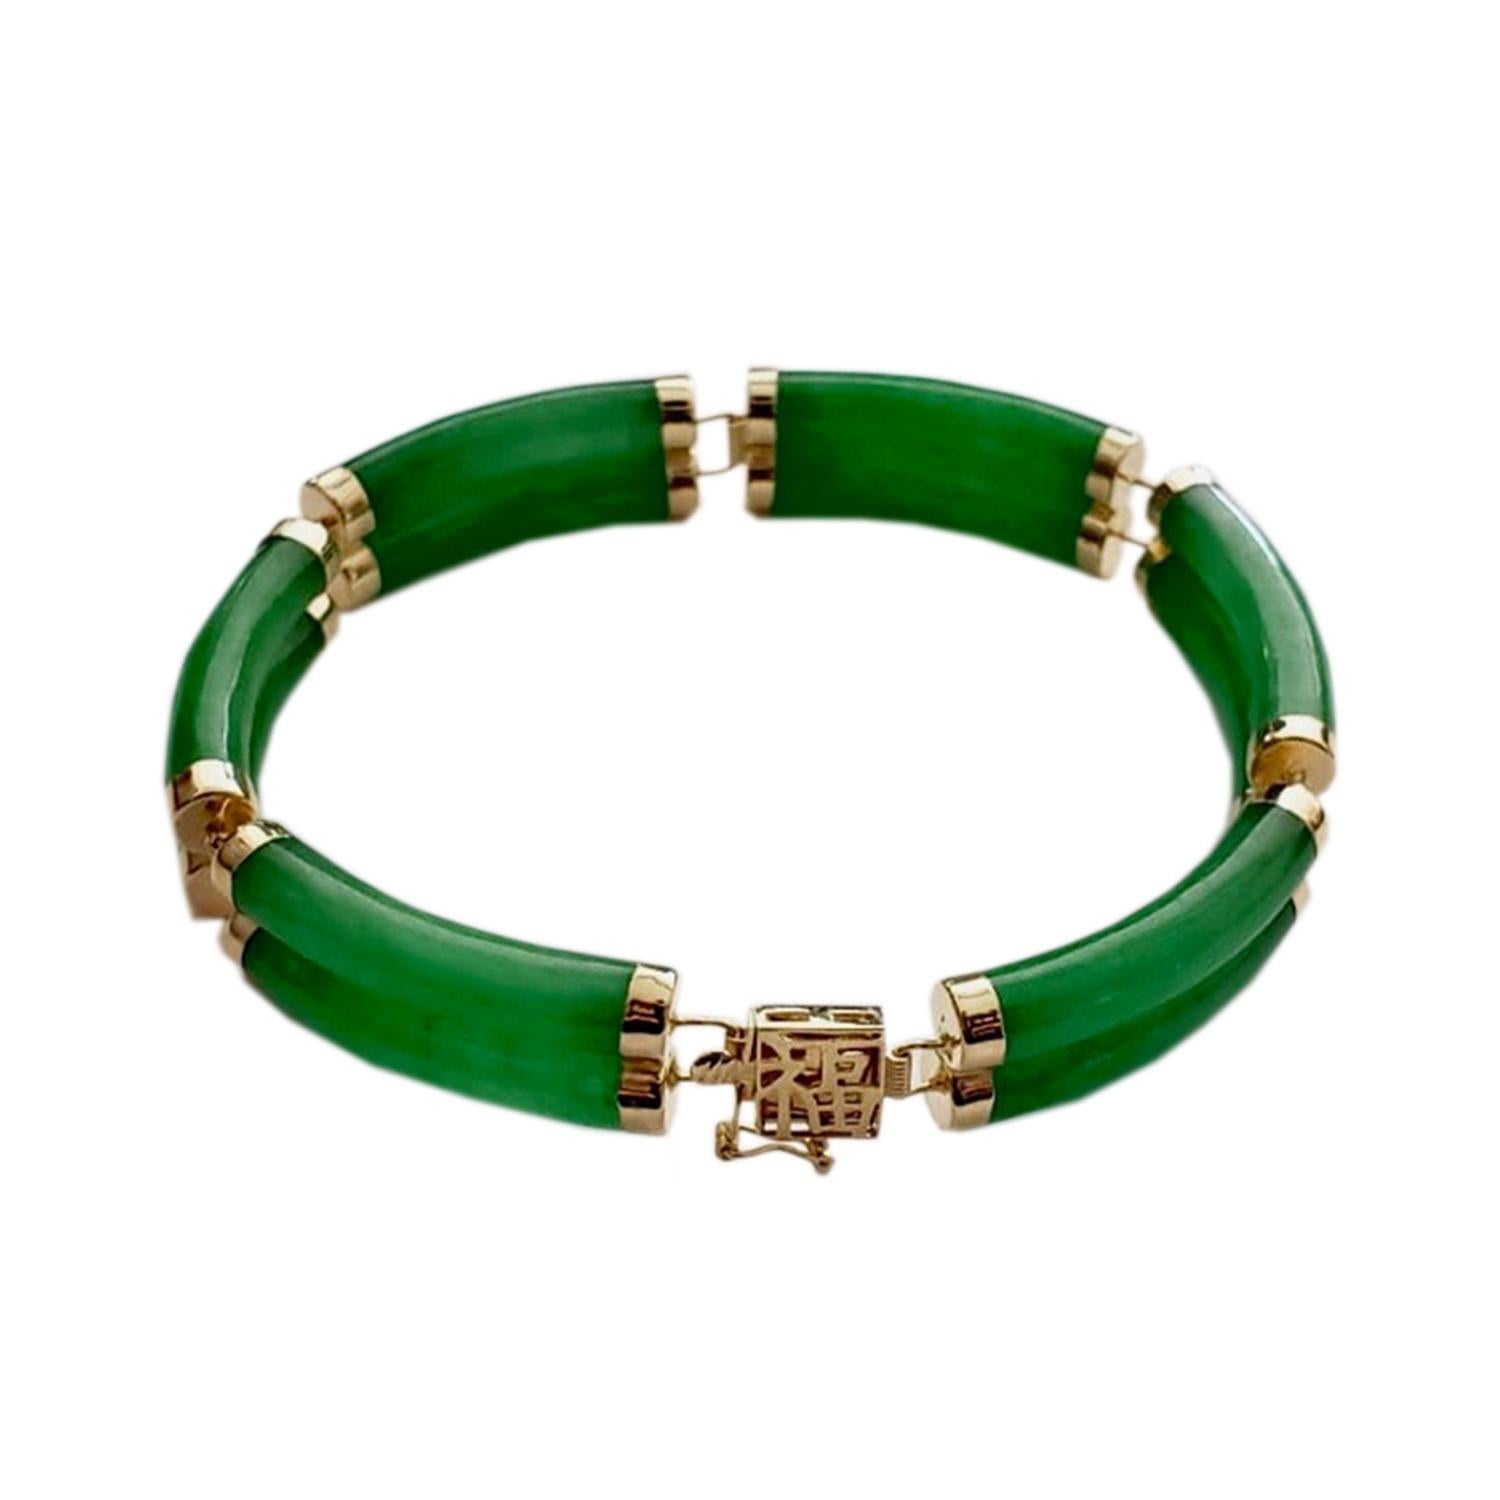 Fortune Jade-Armband mit doppelten Bändern mit Gliedern und Verschluss aus 14K massivem Gelbgold

Unser 